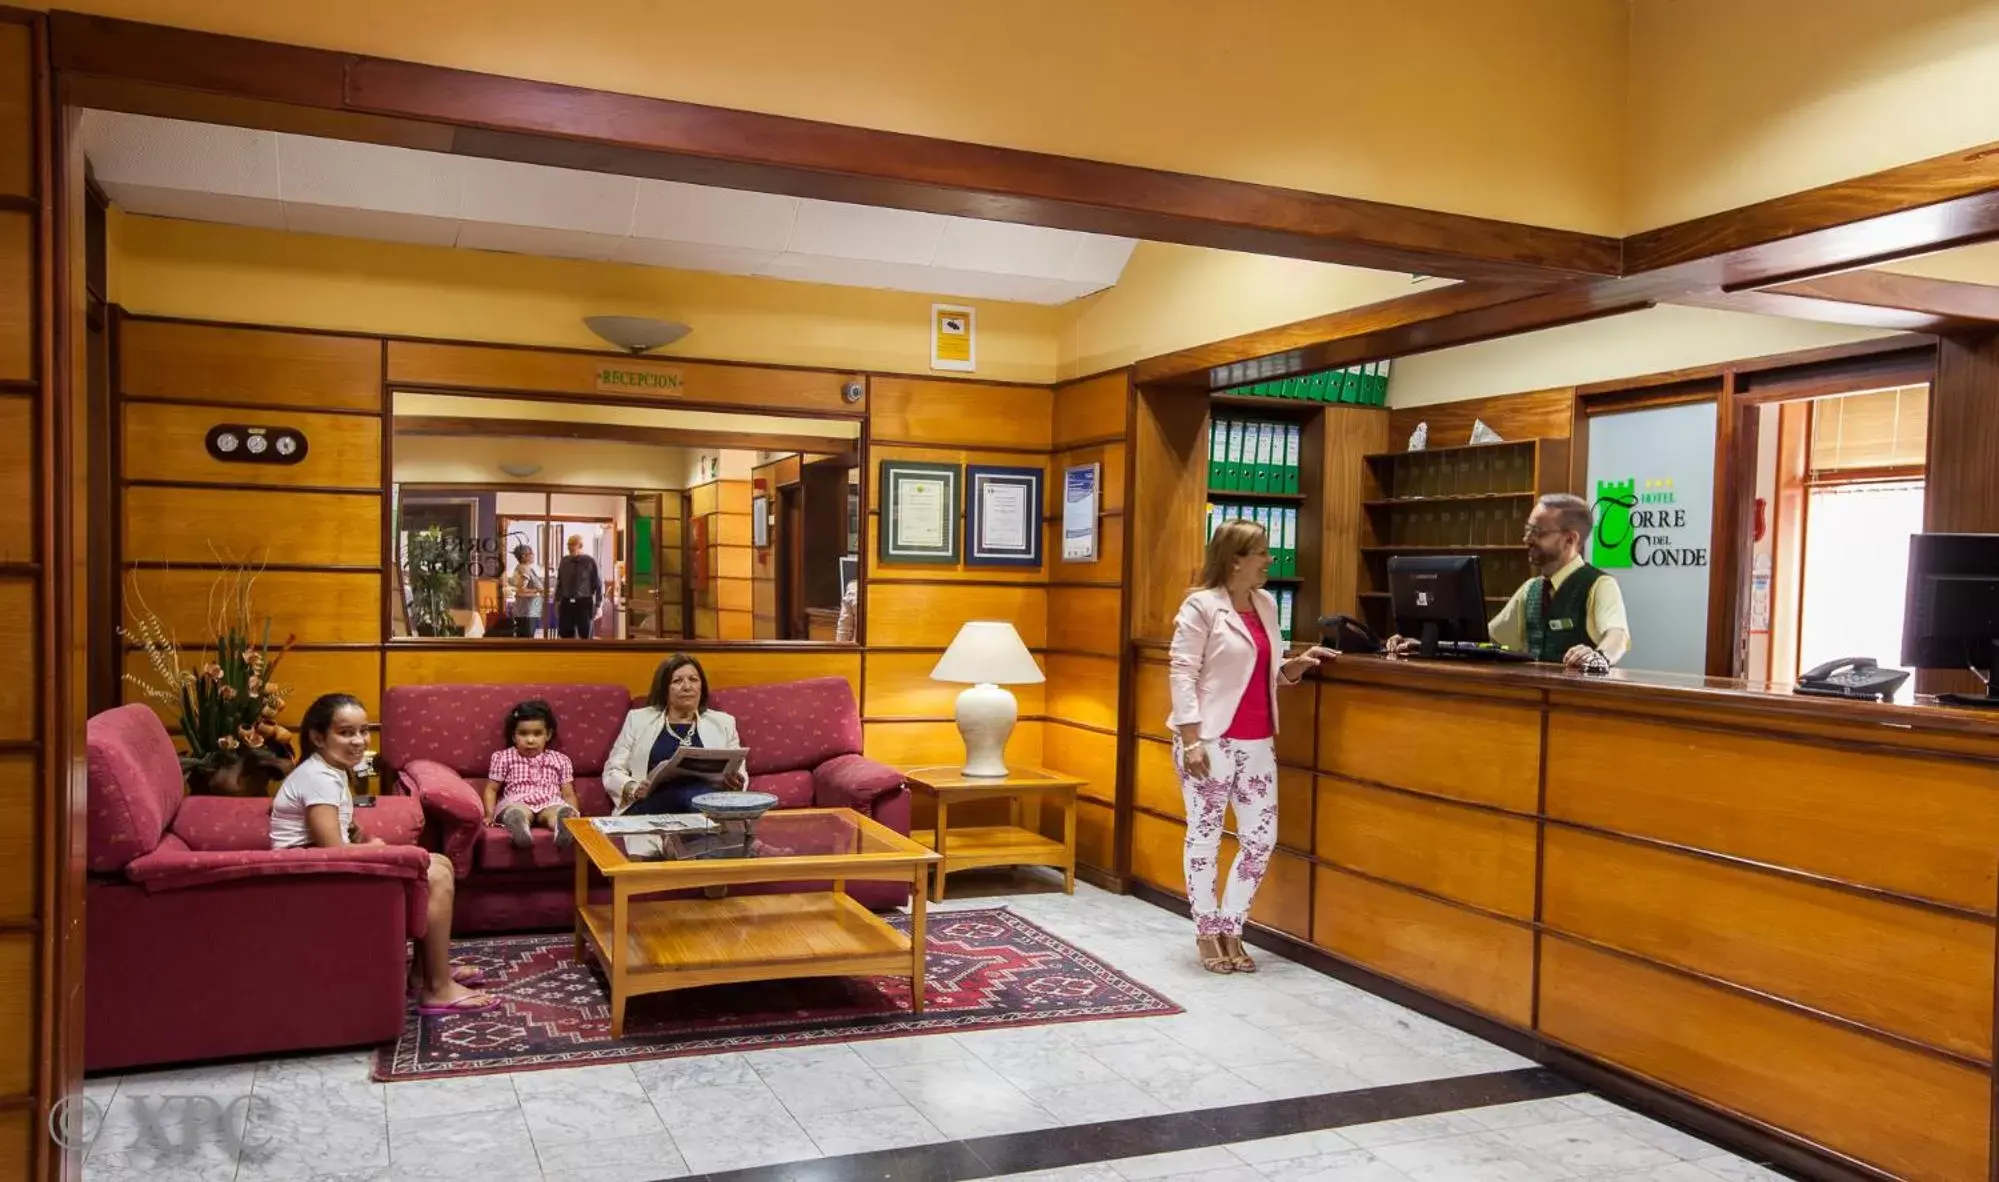 Lobby or reception, Lobby/Reception in Hotel Torre Del Conde